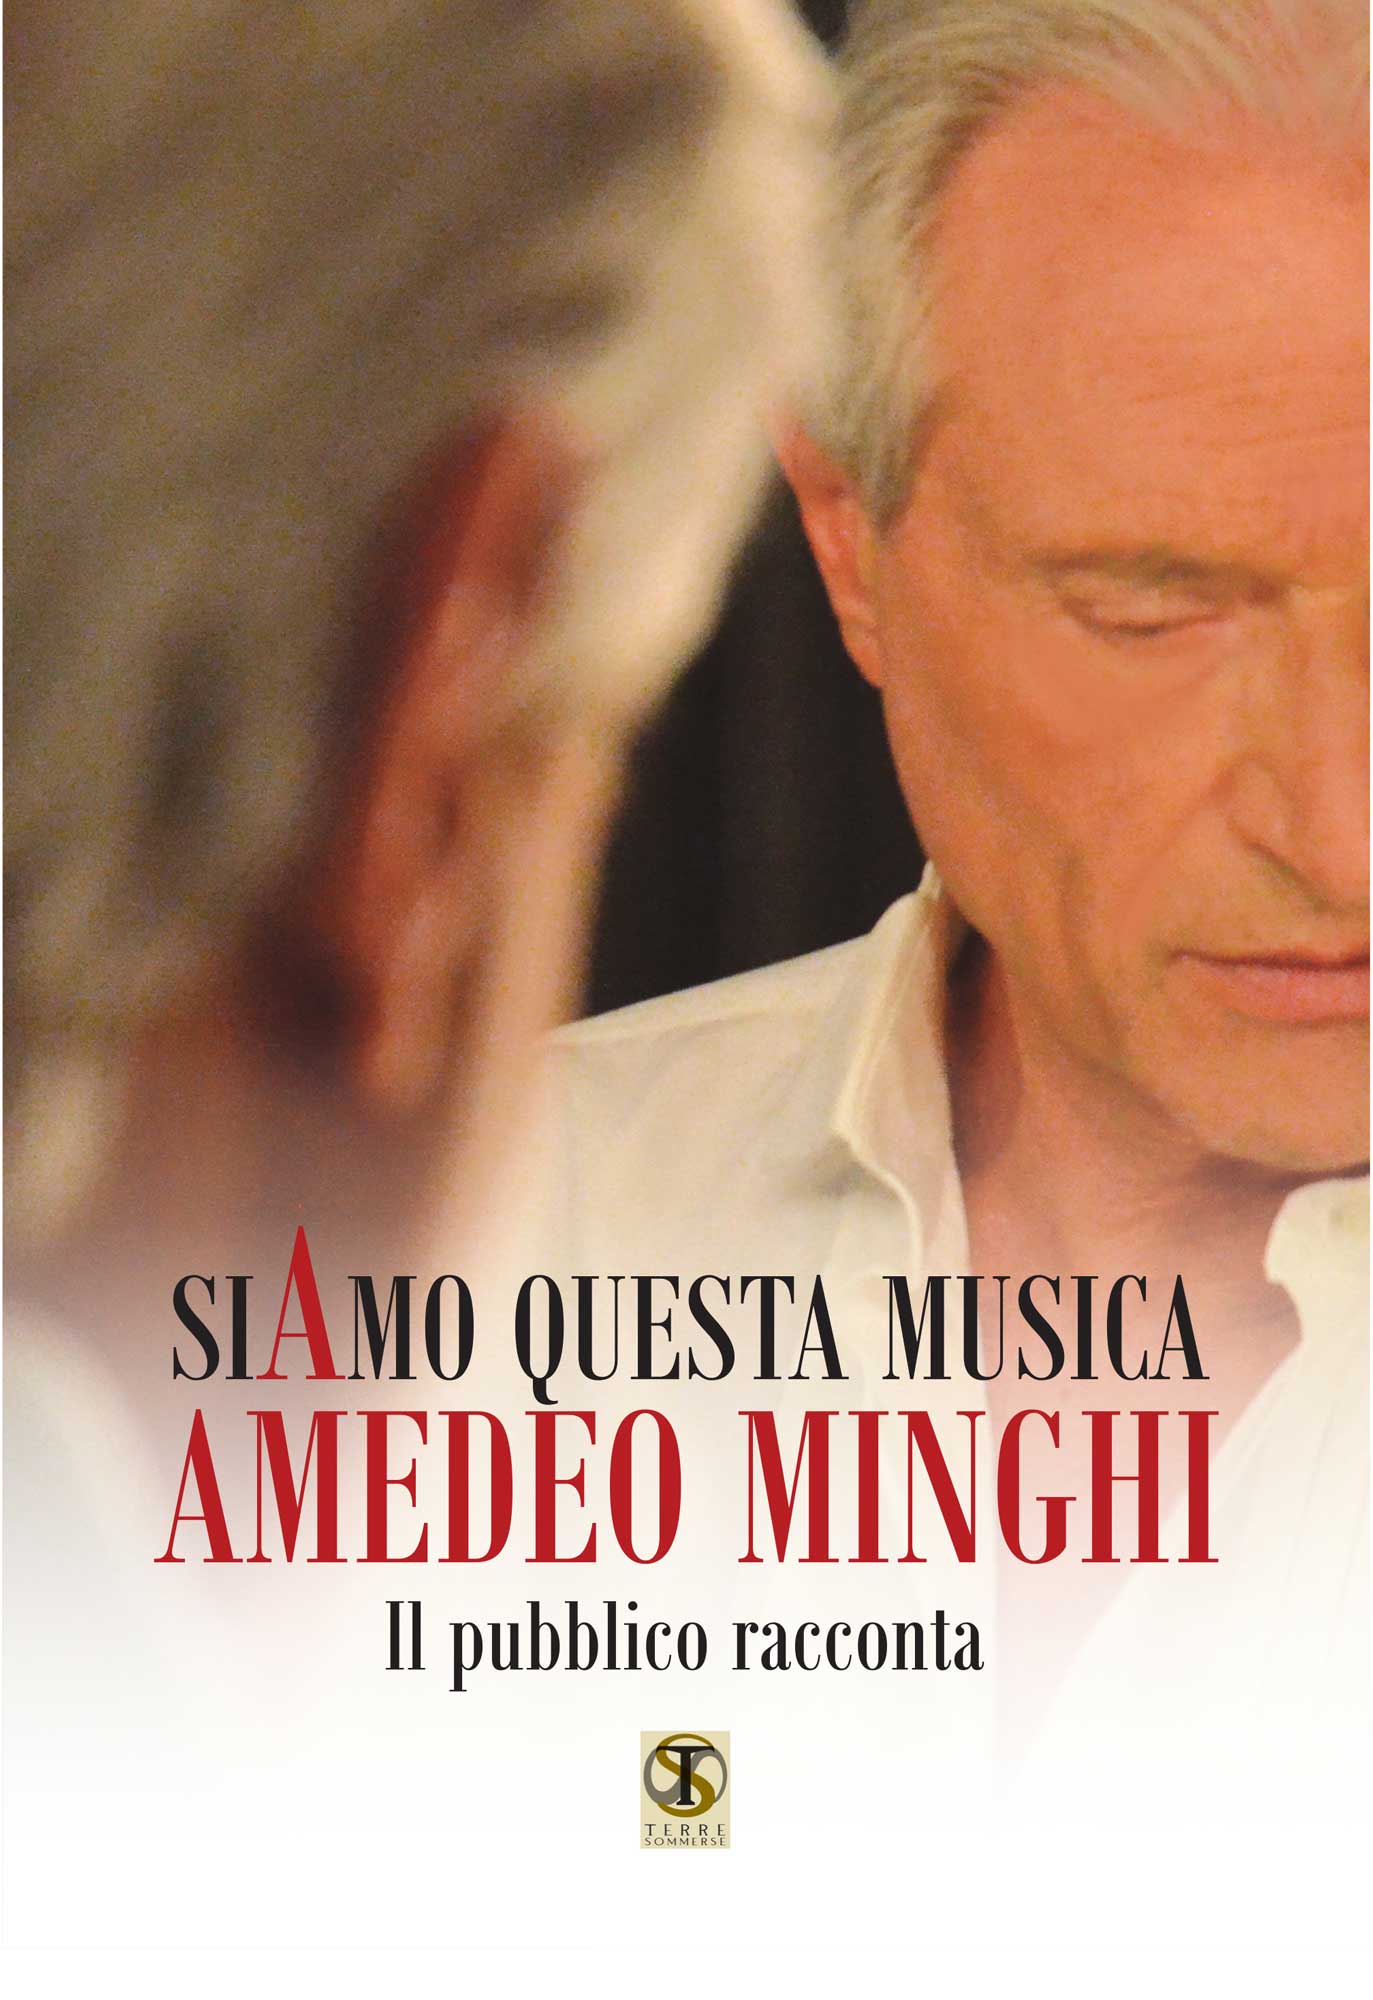  Amedeo Minghi,  il suo nuovo libro “SiAmo questa musica” in libreria dal 26